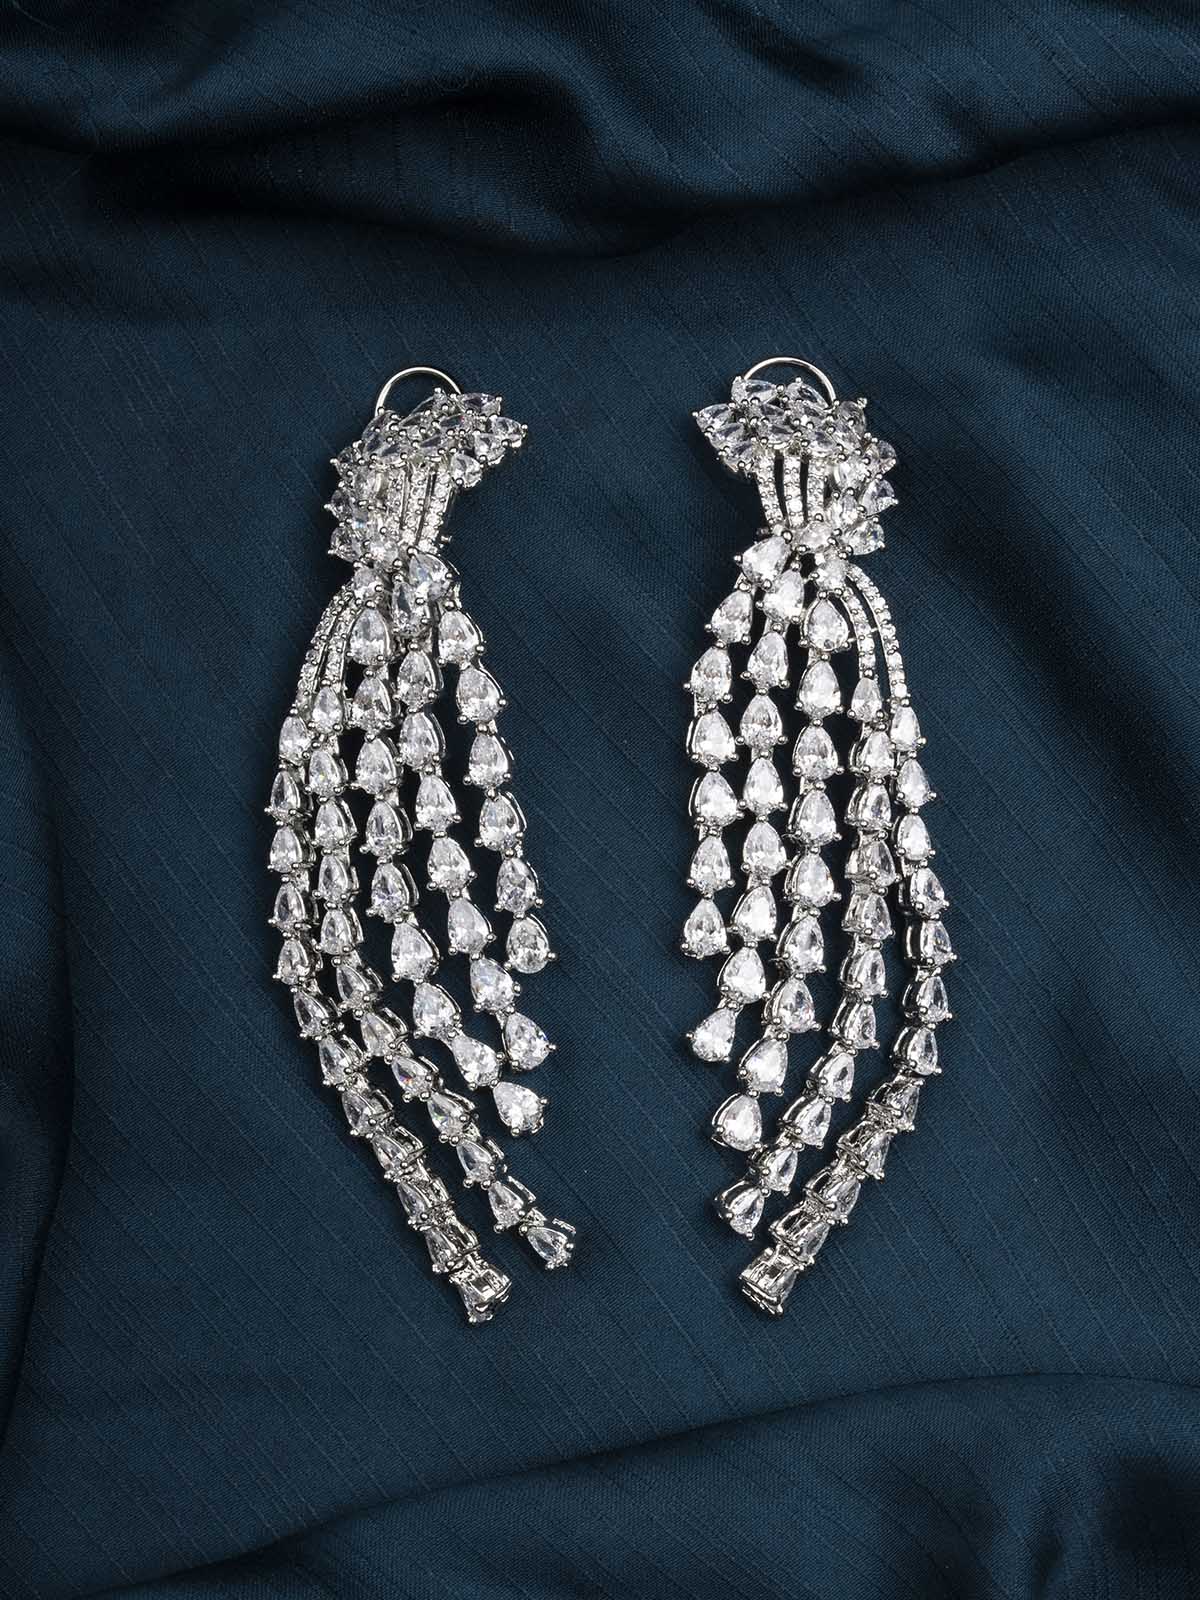 CZEAR537 - Silver Plated Faux Diamond Earrings